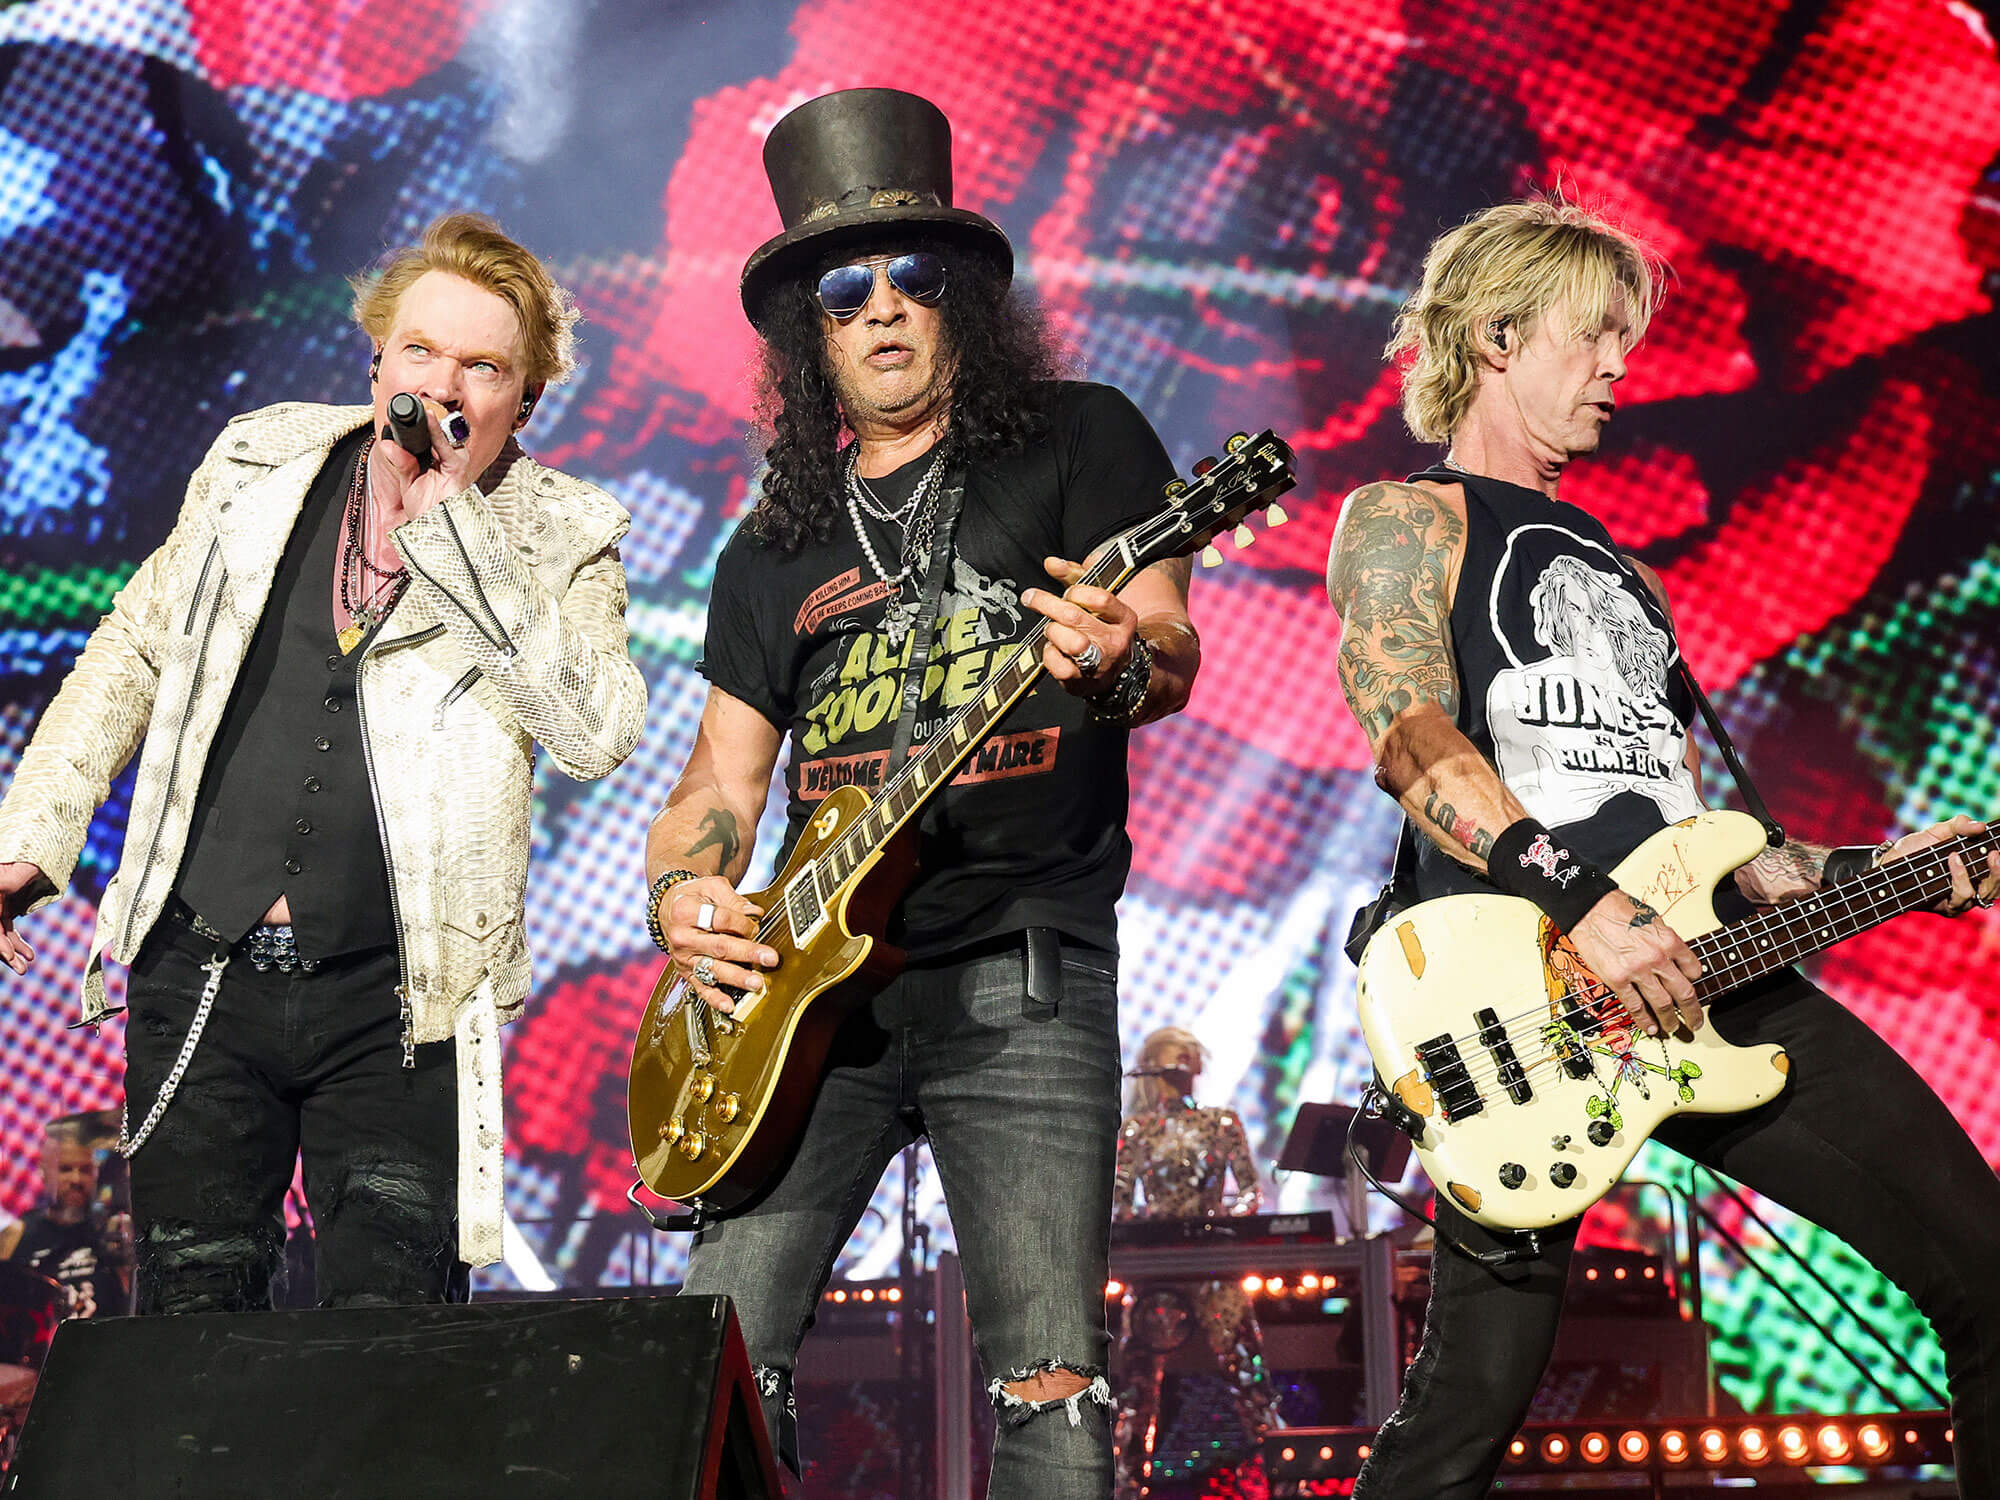 [L-R] Axl Rose, Slash and Duff McKagan of Guns N' Roses